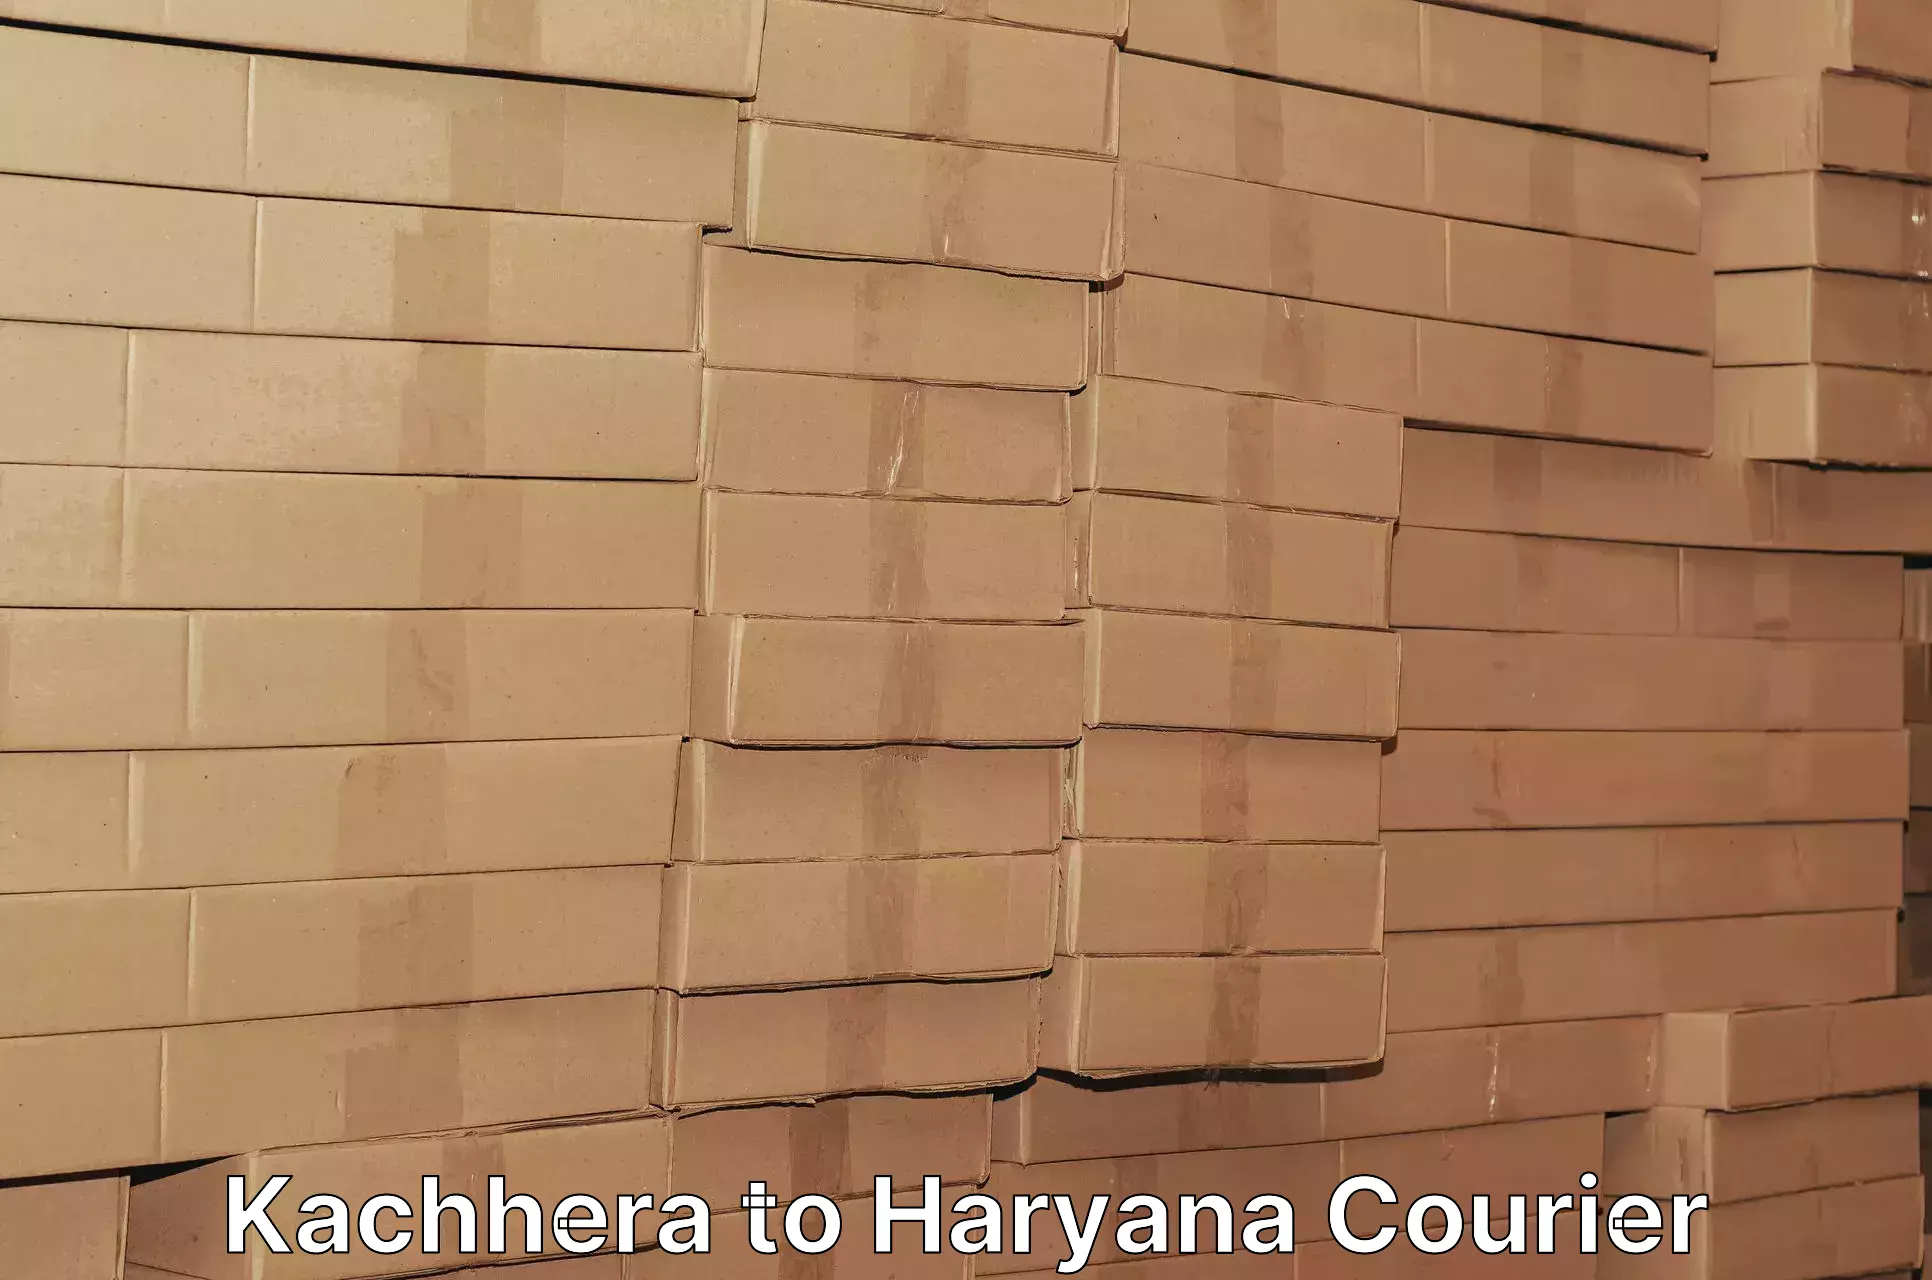 Enhanced tracking features Kachhera to Haryana